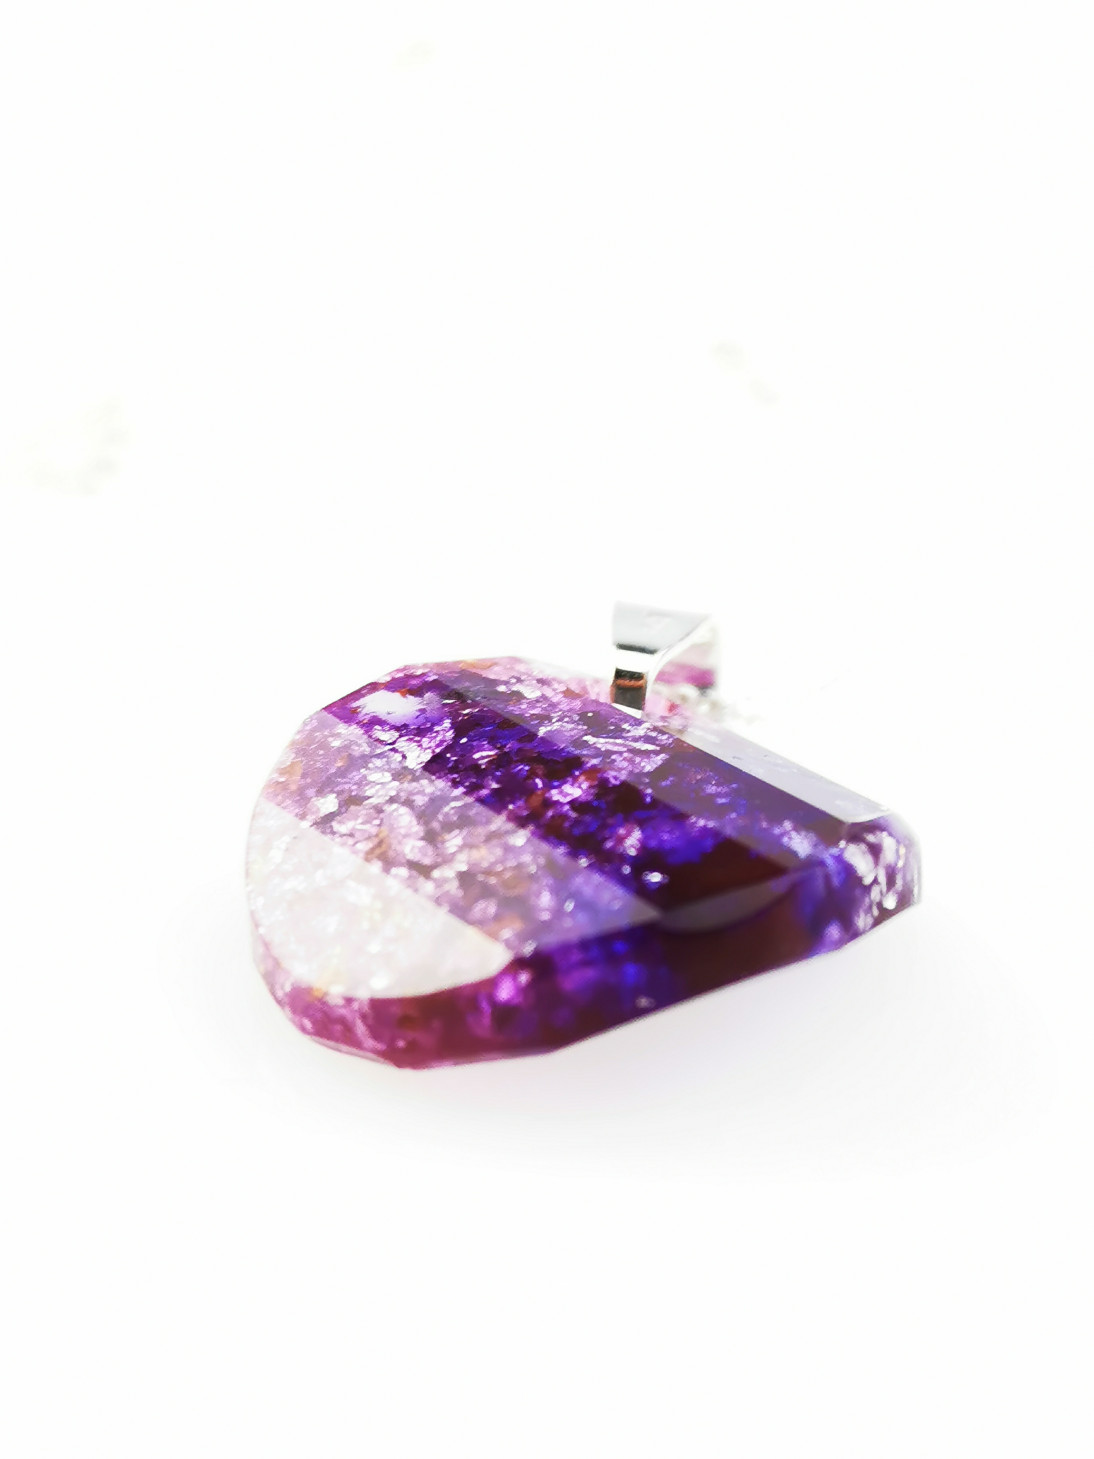 Violet Rondelle Orgone Crystal Pendant by OrgoneVibes